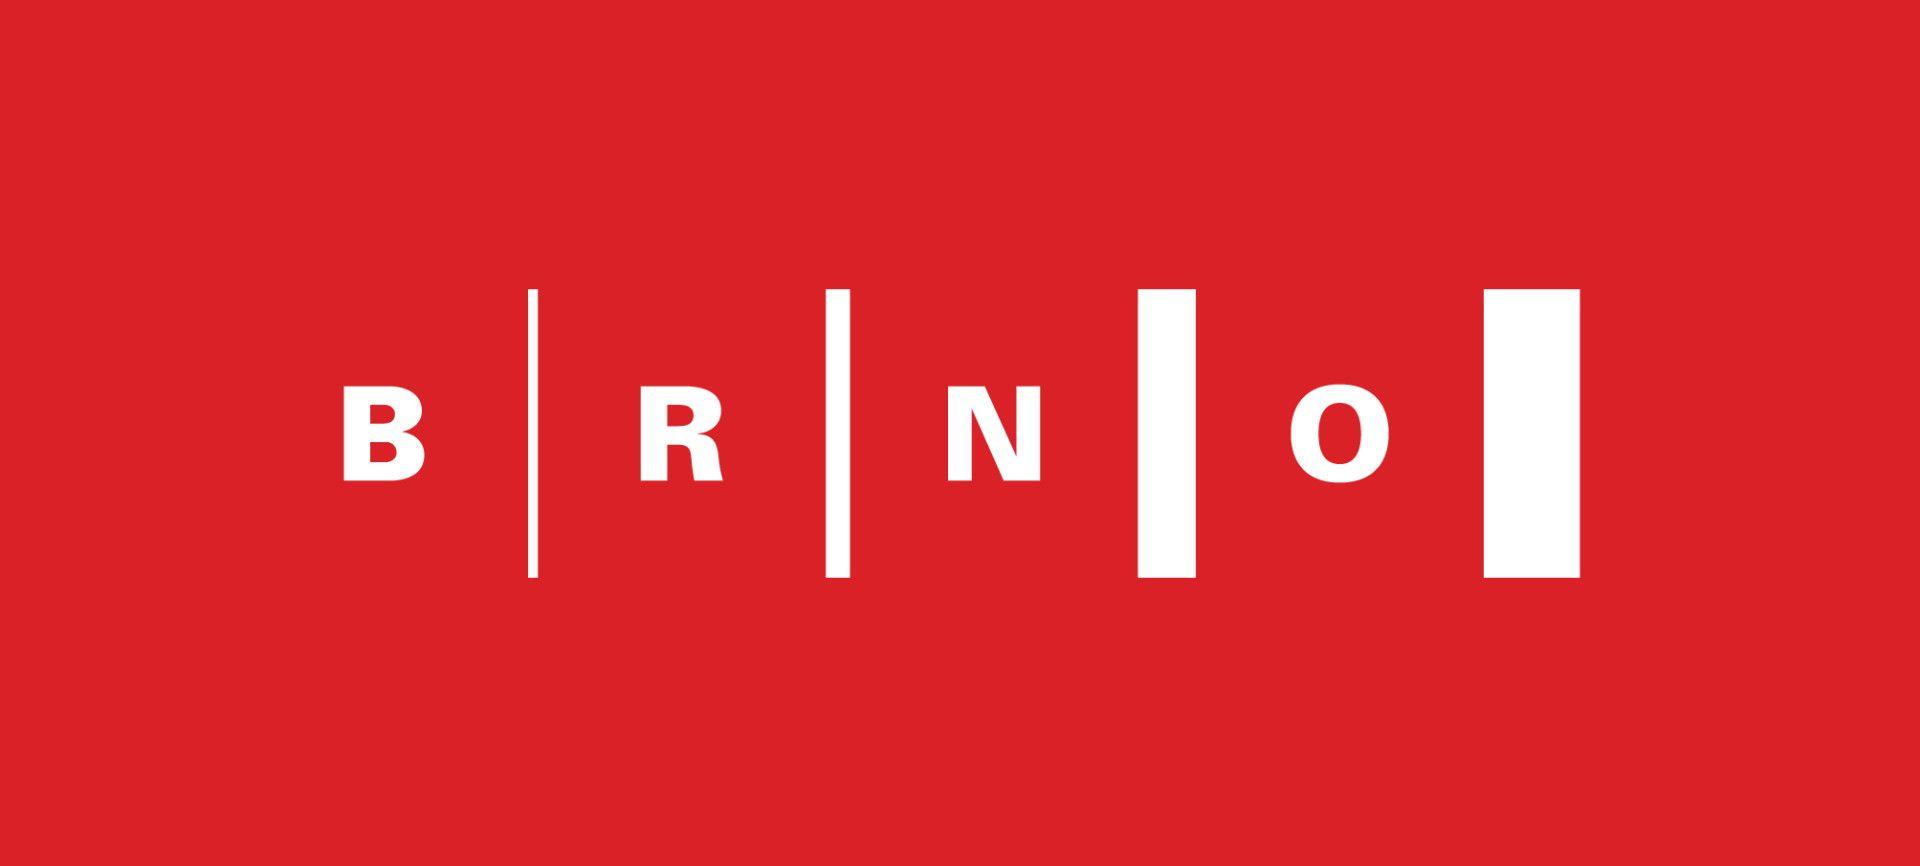 Brno Logo - Partners